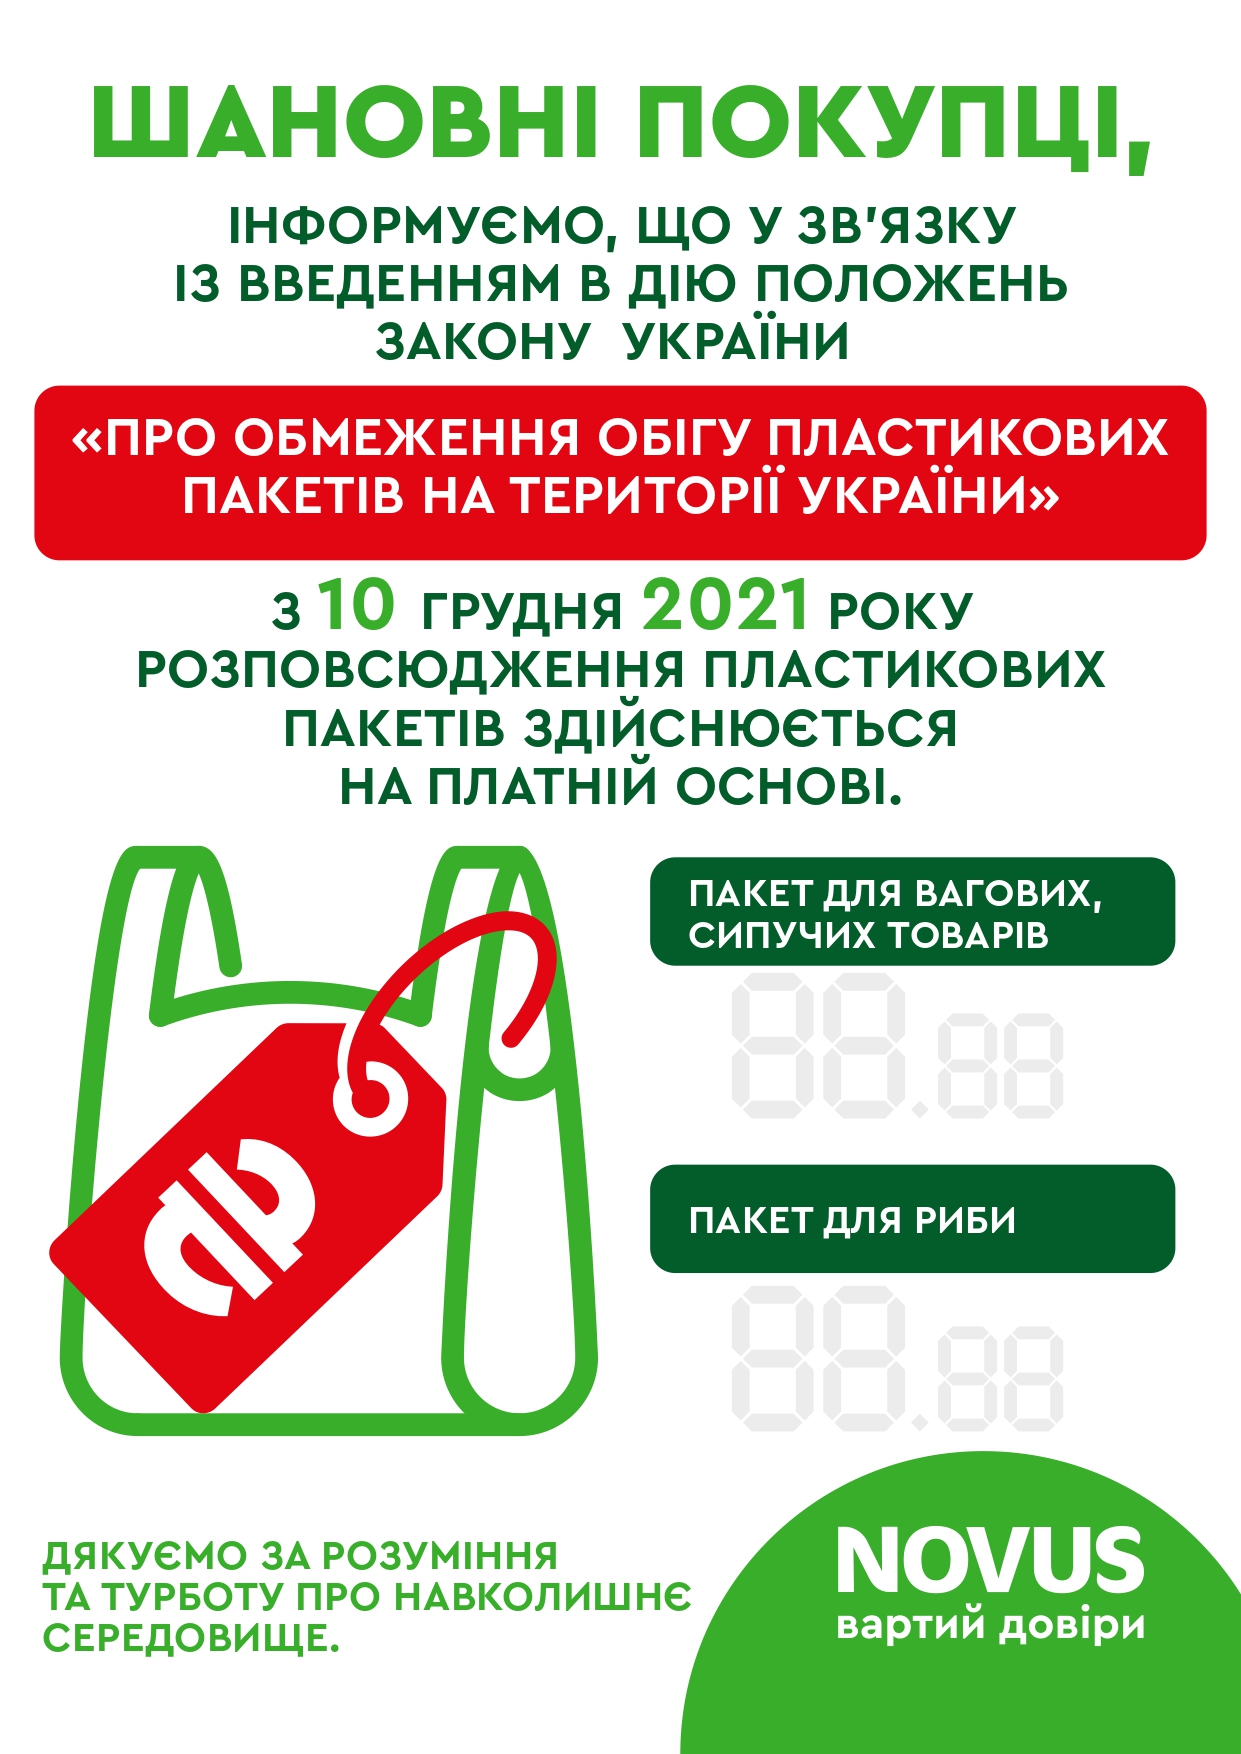 Згідно із законом «Про обмеження обігу пластикових пакетів на території України», З 10 грудня розповсюдження пластикових пакетів у магазинах мережі здійснюється на платній основі